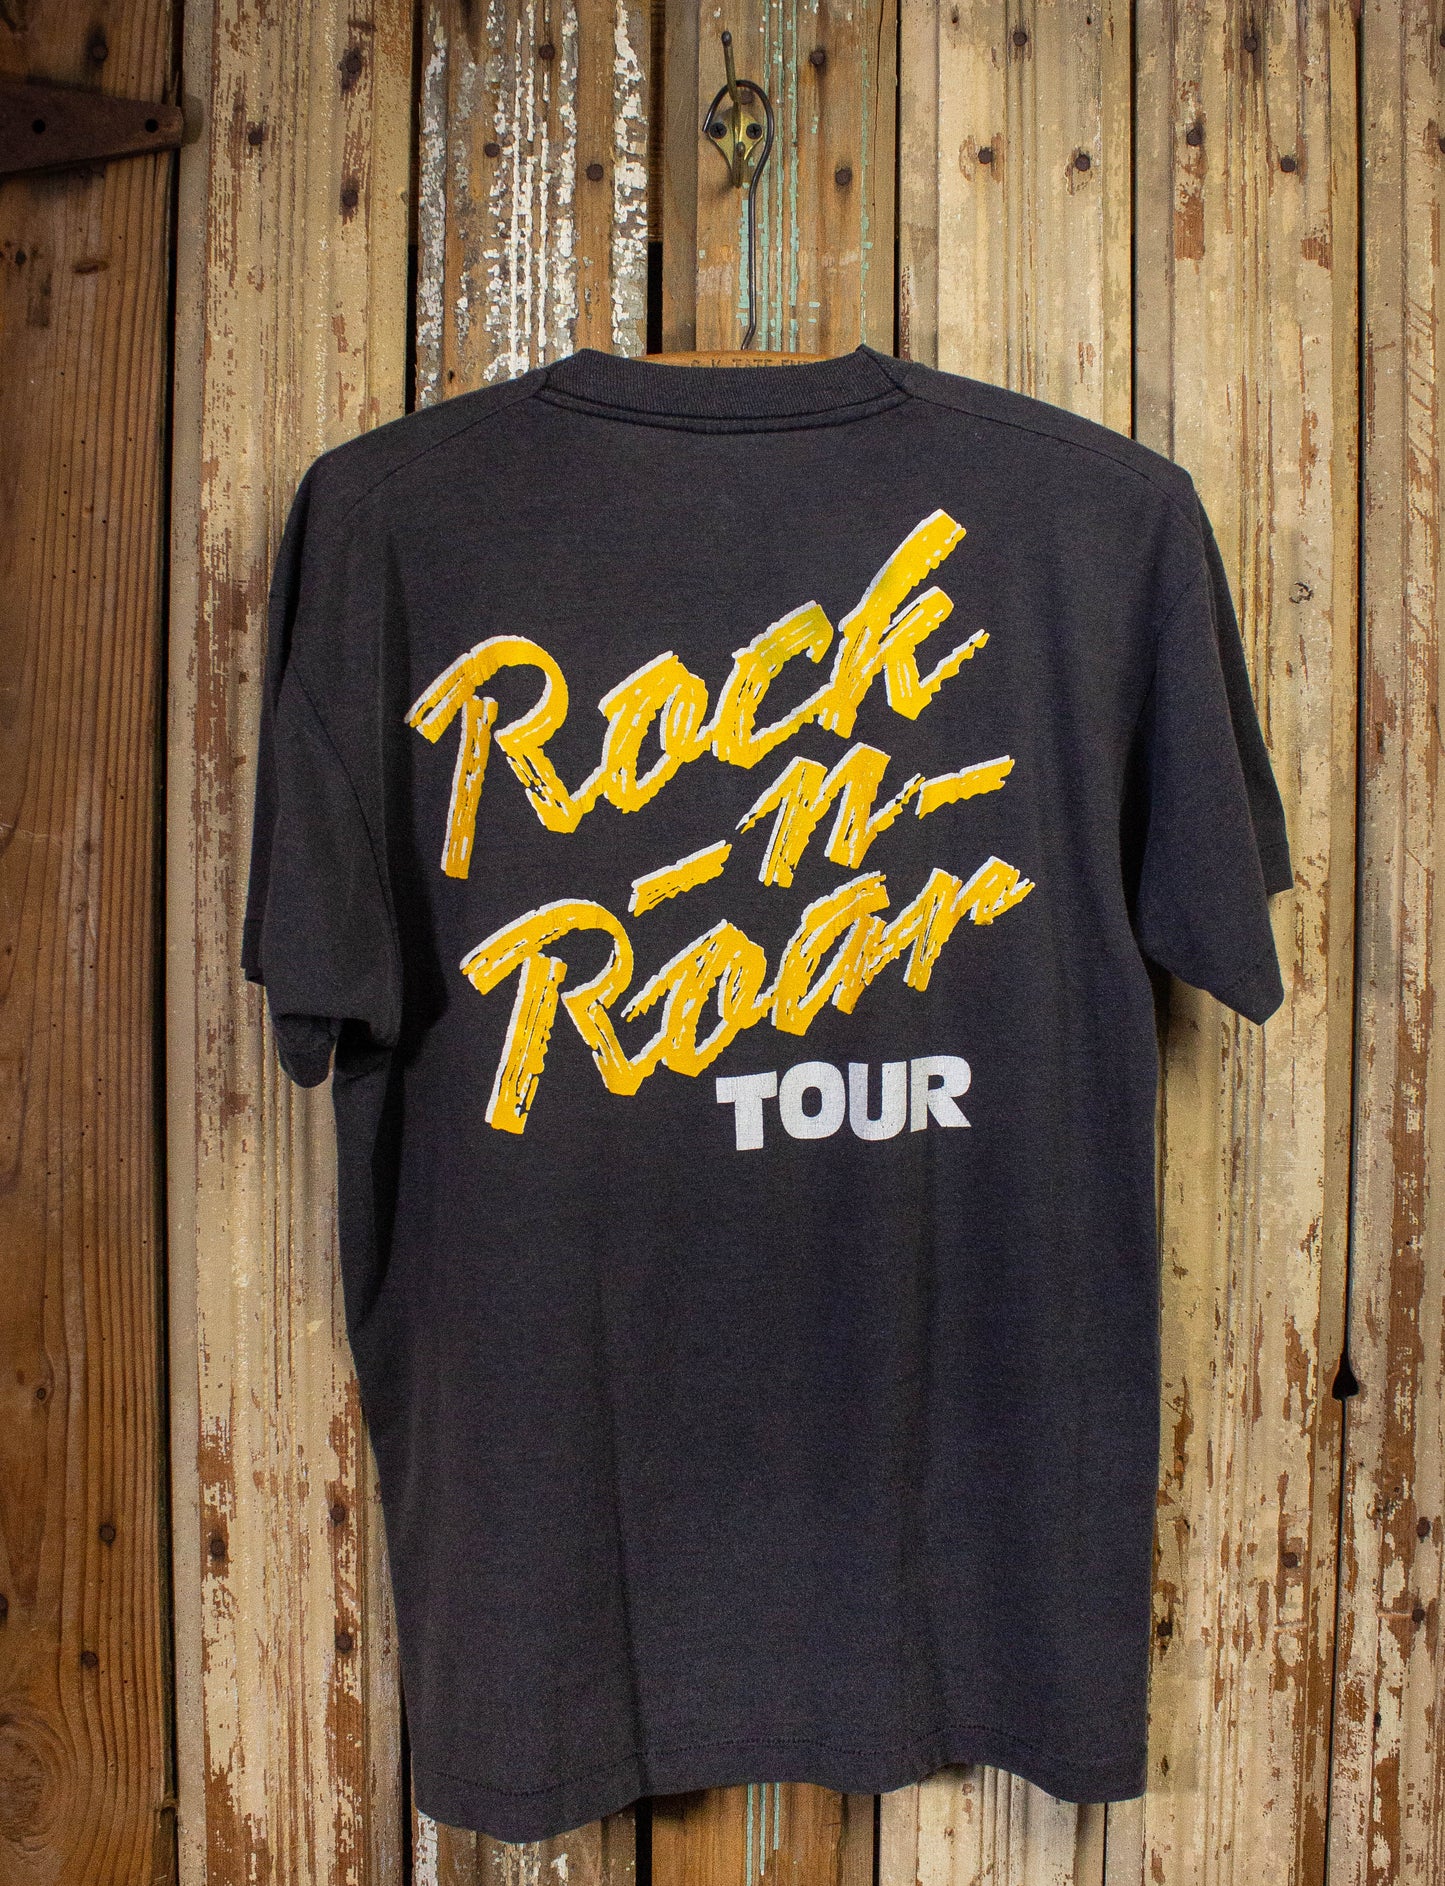 Vintage White Lion Rock N Roar Concert T Shirt 1987 Black Large